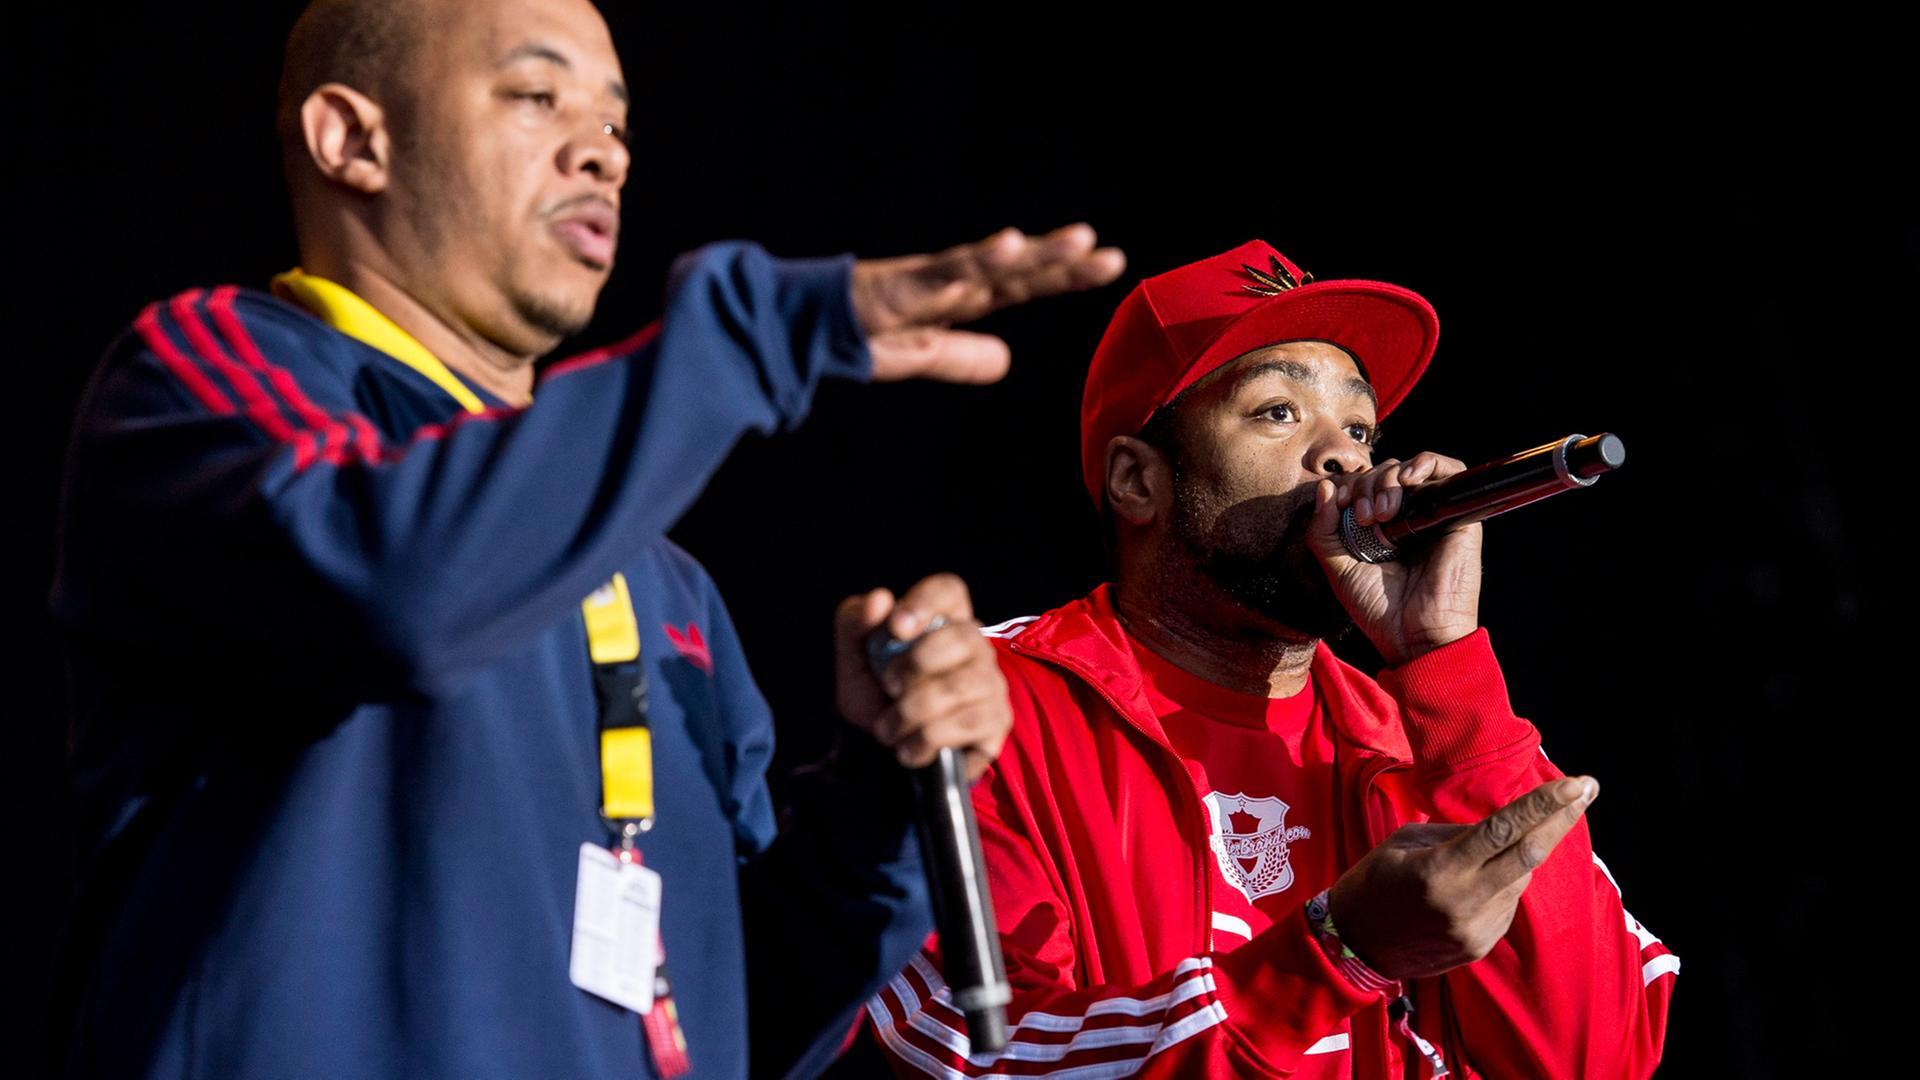 Die Rapper U-God (l) und Method Man (r) von der HipHop-Formation Wu-Tang Clan bei einem Auftritt auf dem Frauenfeld Open Air in der Schweiz.